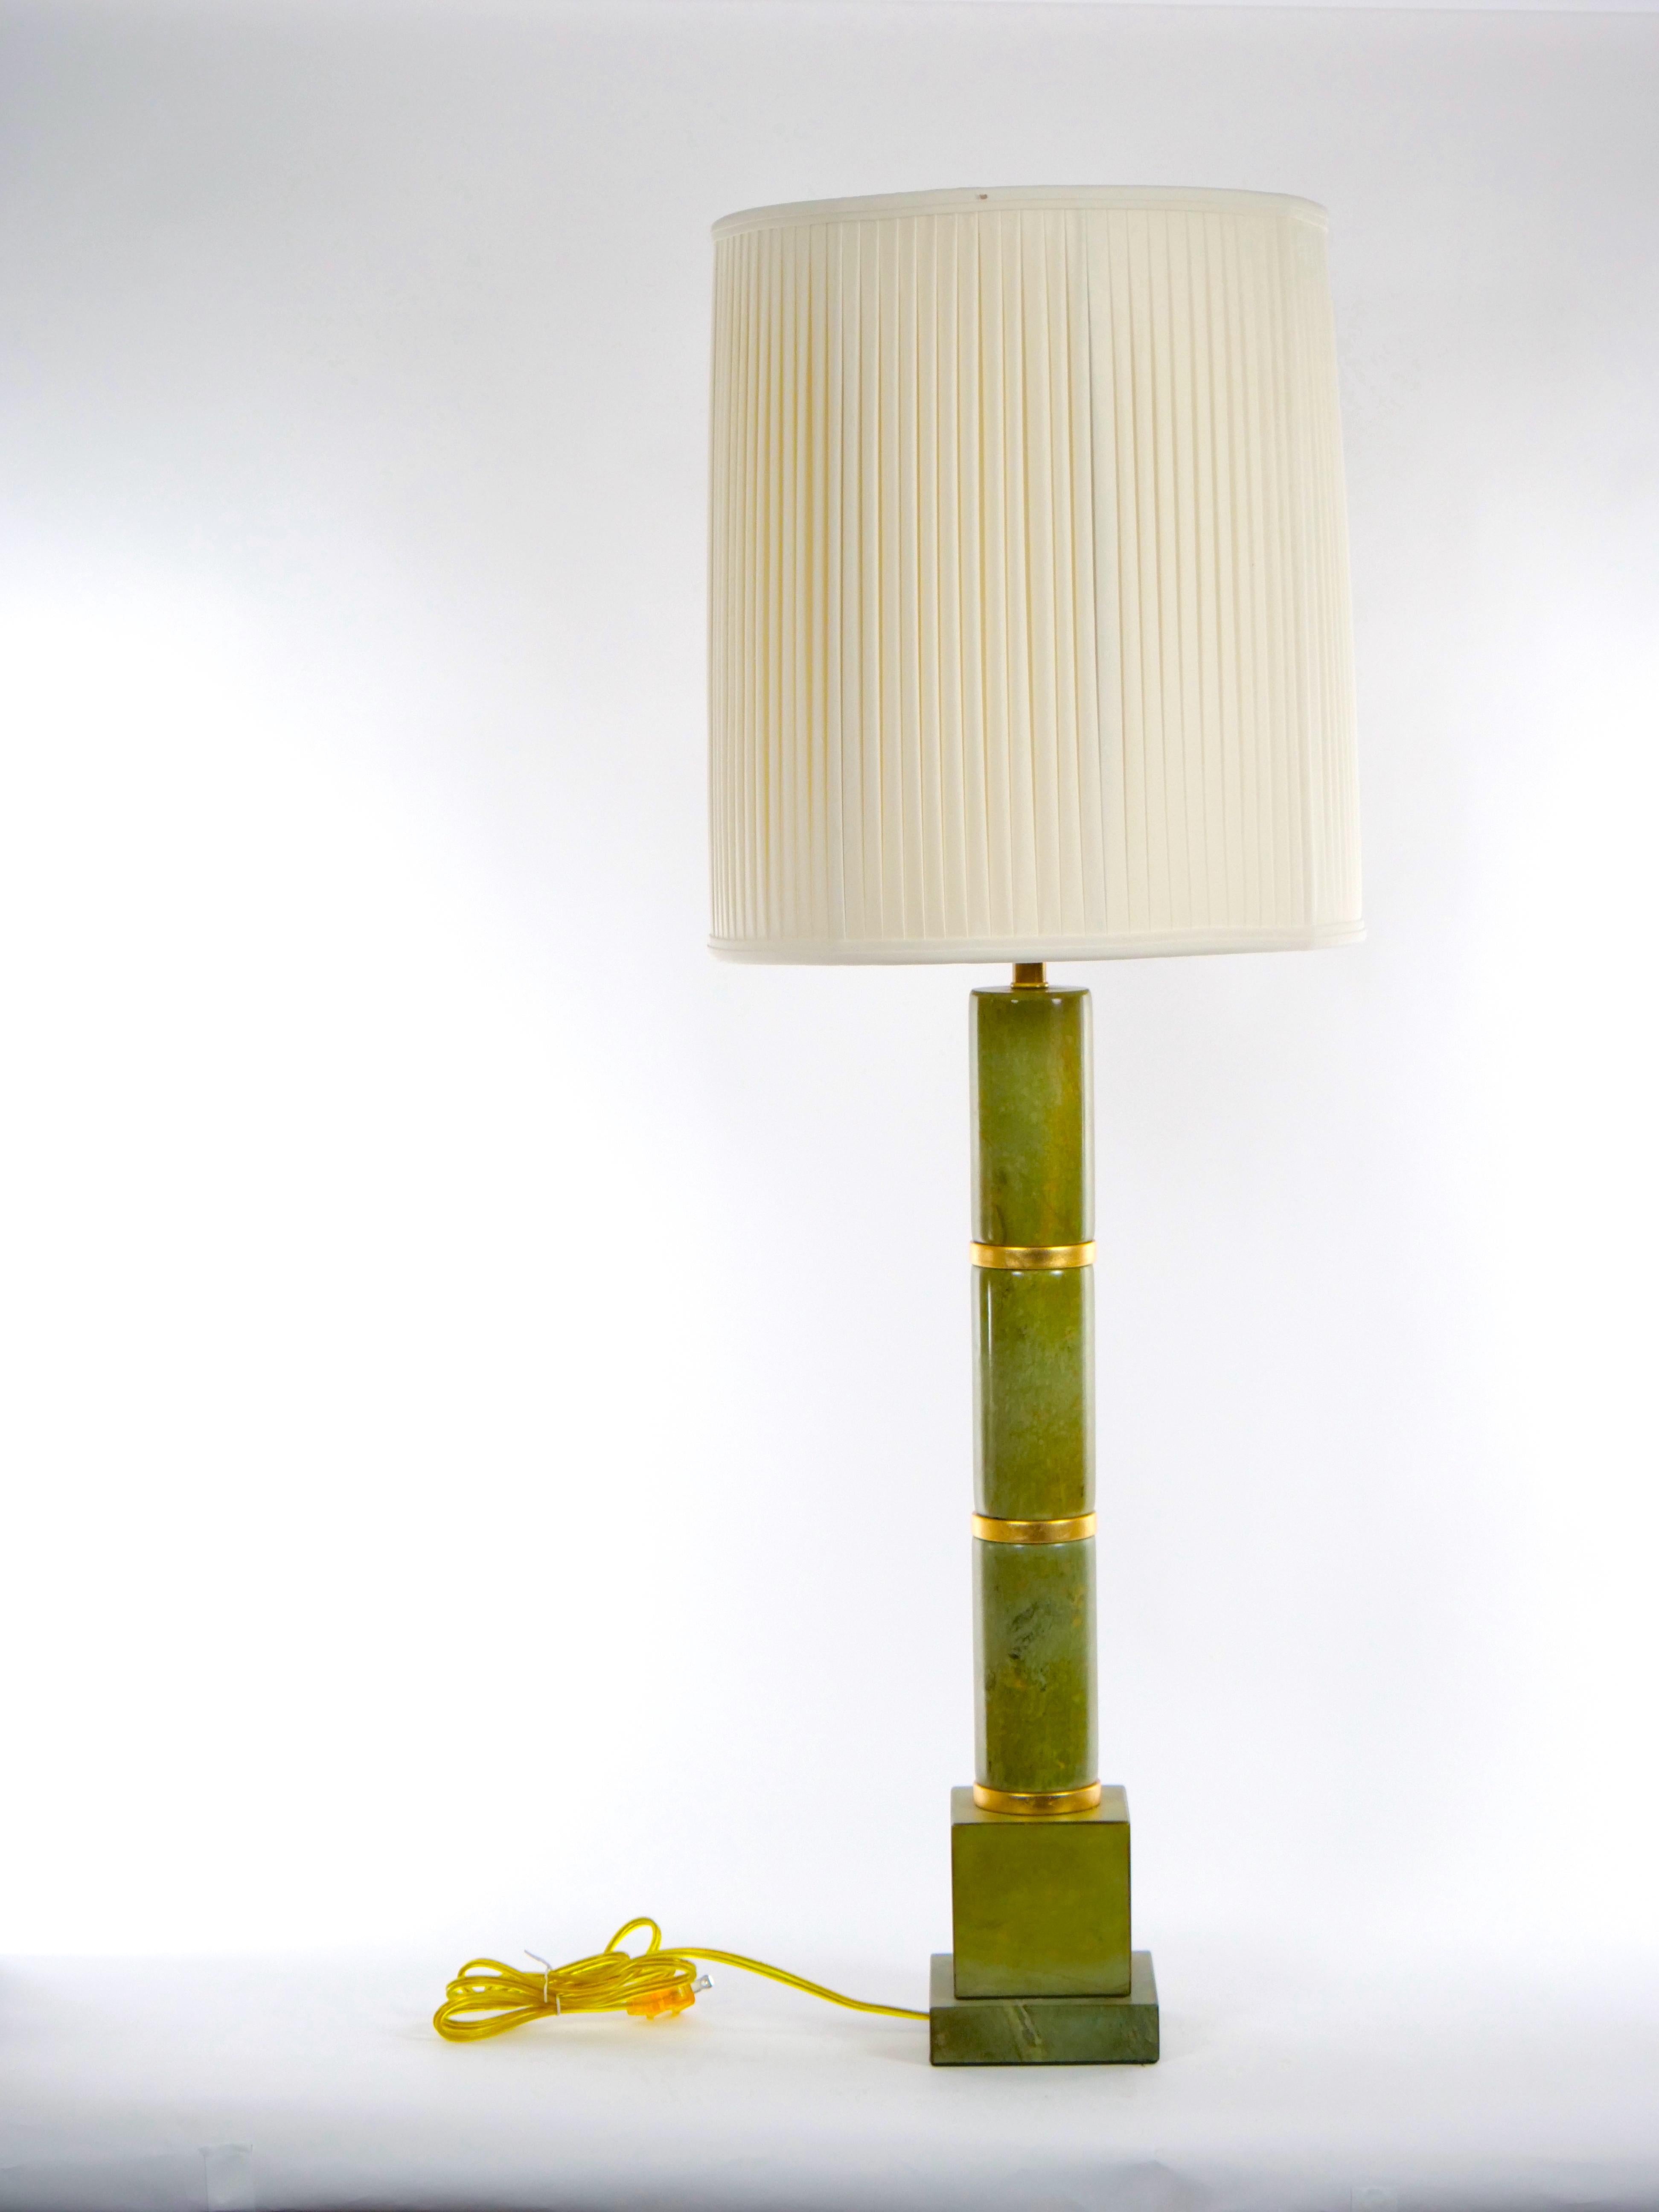 Paire de lampes de table de style art déco en jade vert et or doré. Chaque lampe présente un stock de trois pièces rondes de jade vert en forme de poteau avec une décoration dorée entre les deux, reposant sur une base de forme carrée. Chaque lampe